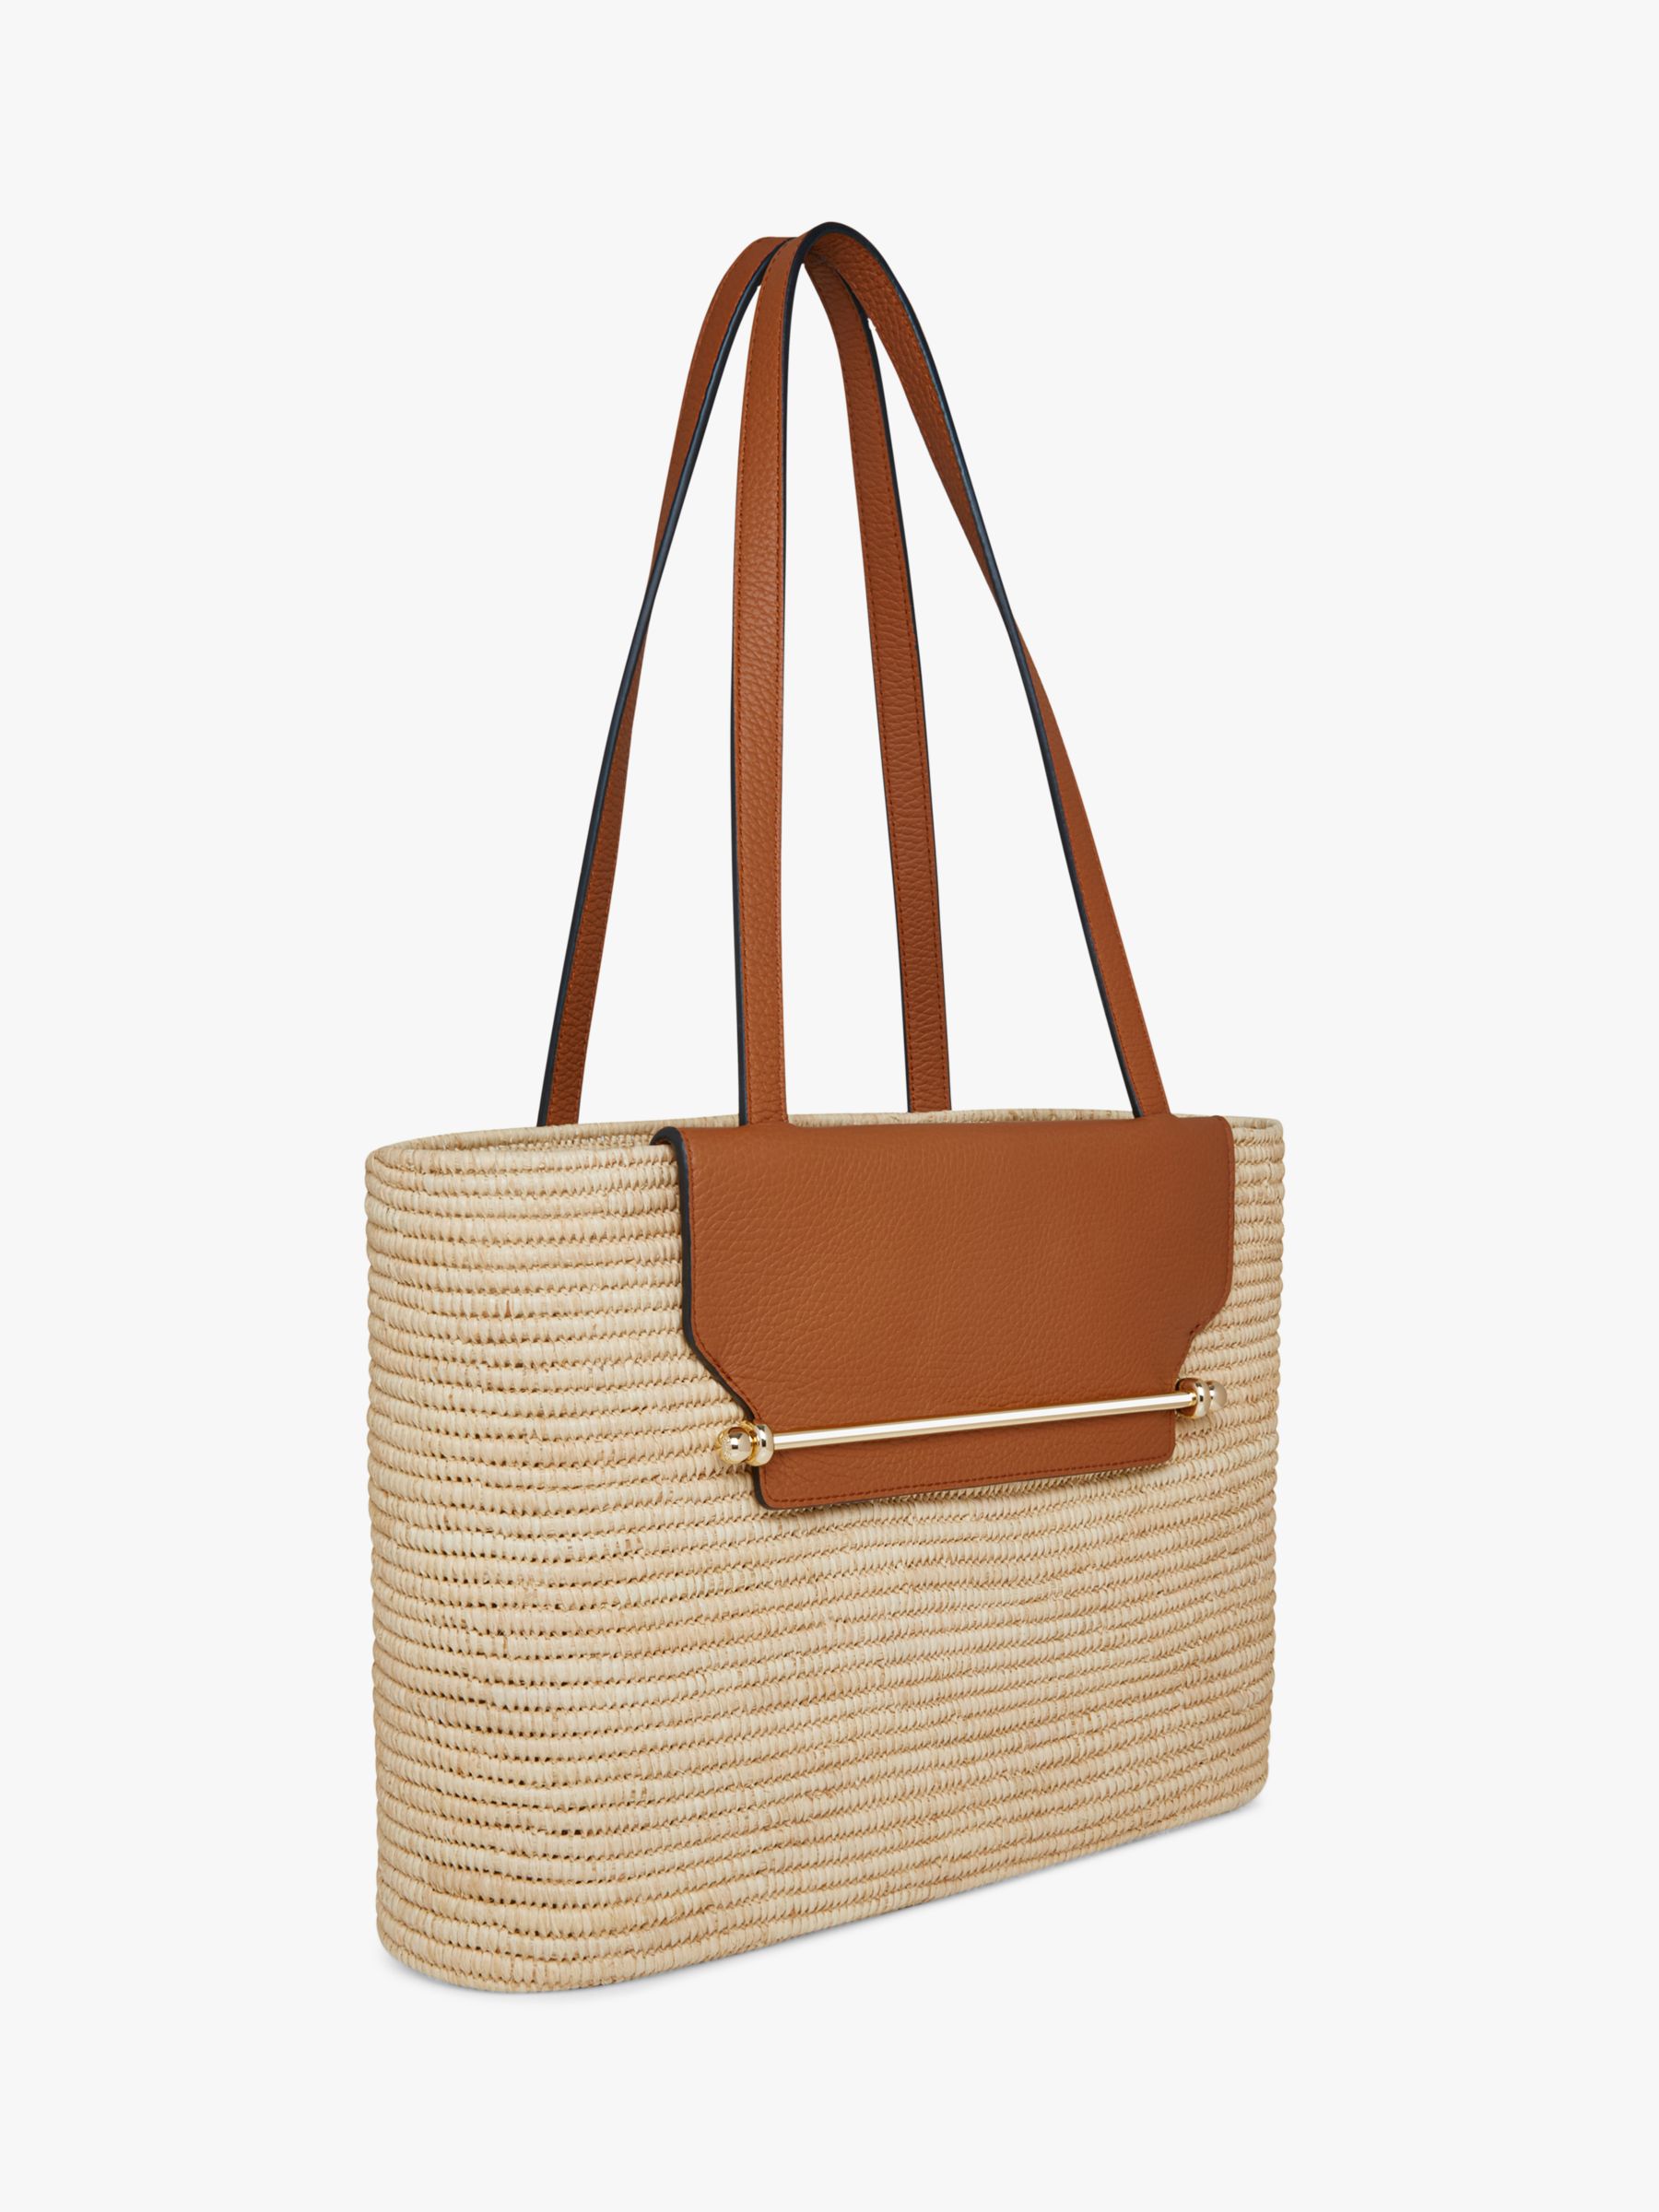 Strathberry Raffia and Leather Basket Shoulder Bag, Tan